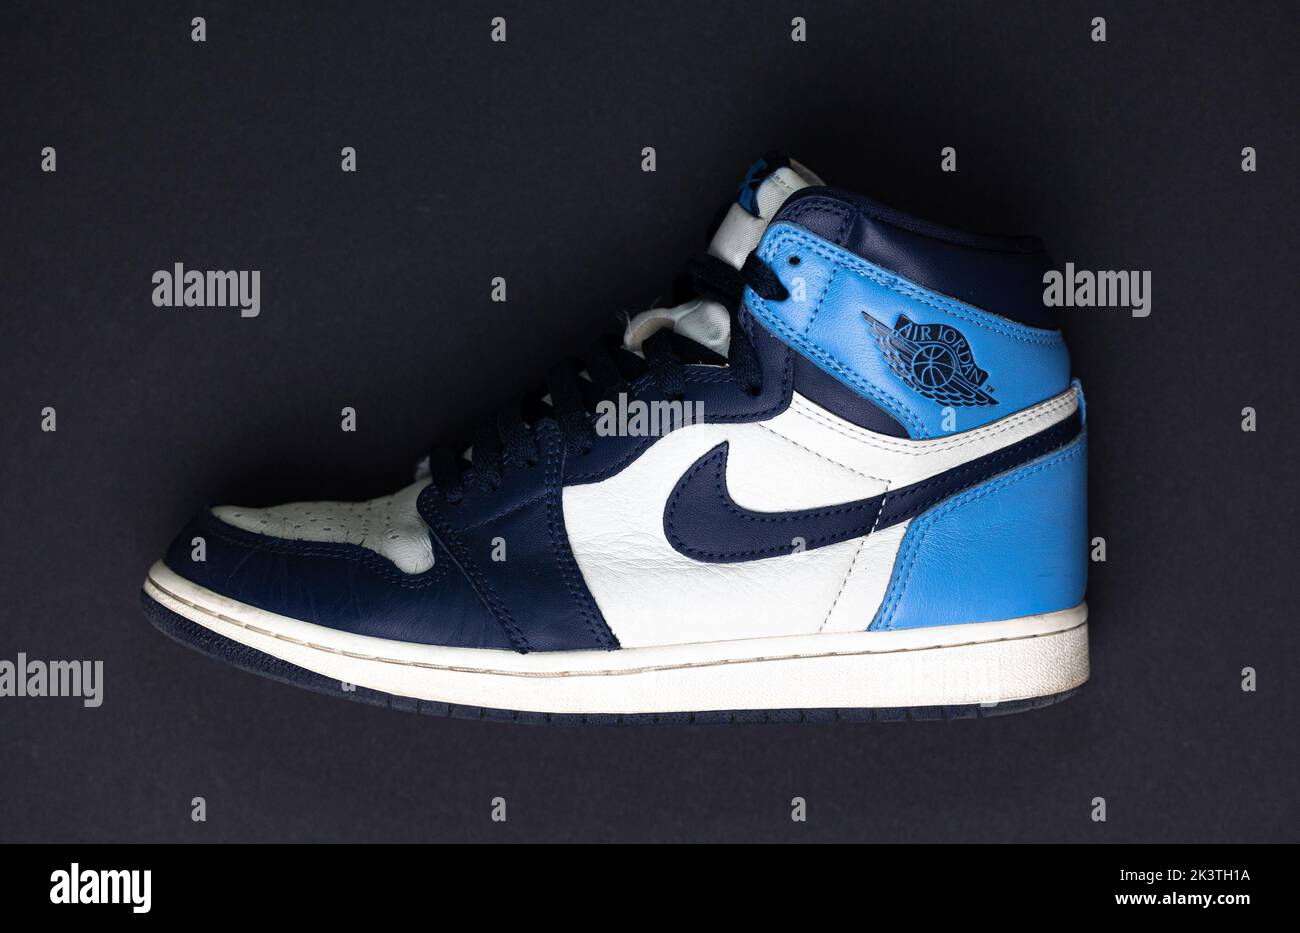 Blue nike shoes -Fotos und -Bildmaterial in hoher Auflösung - Seite 2 -  Alamy